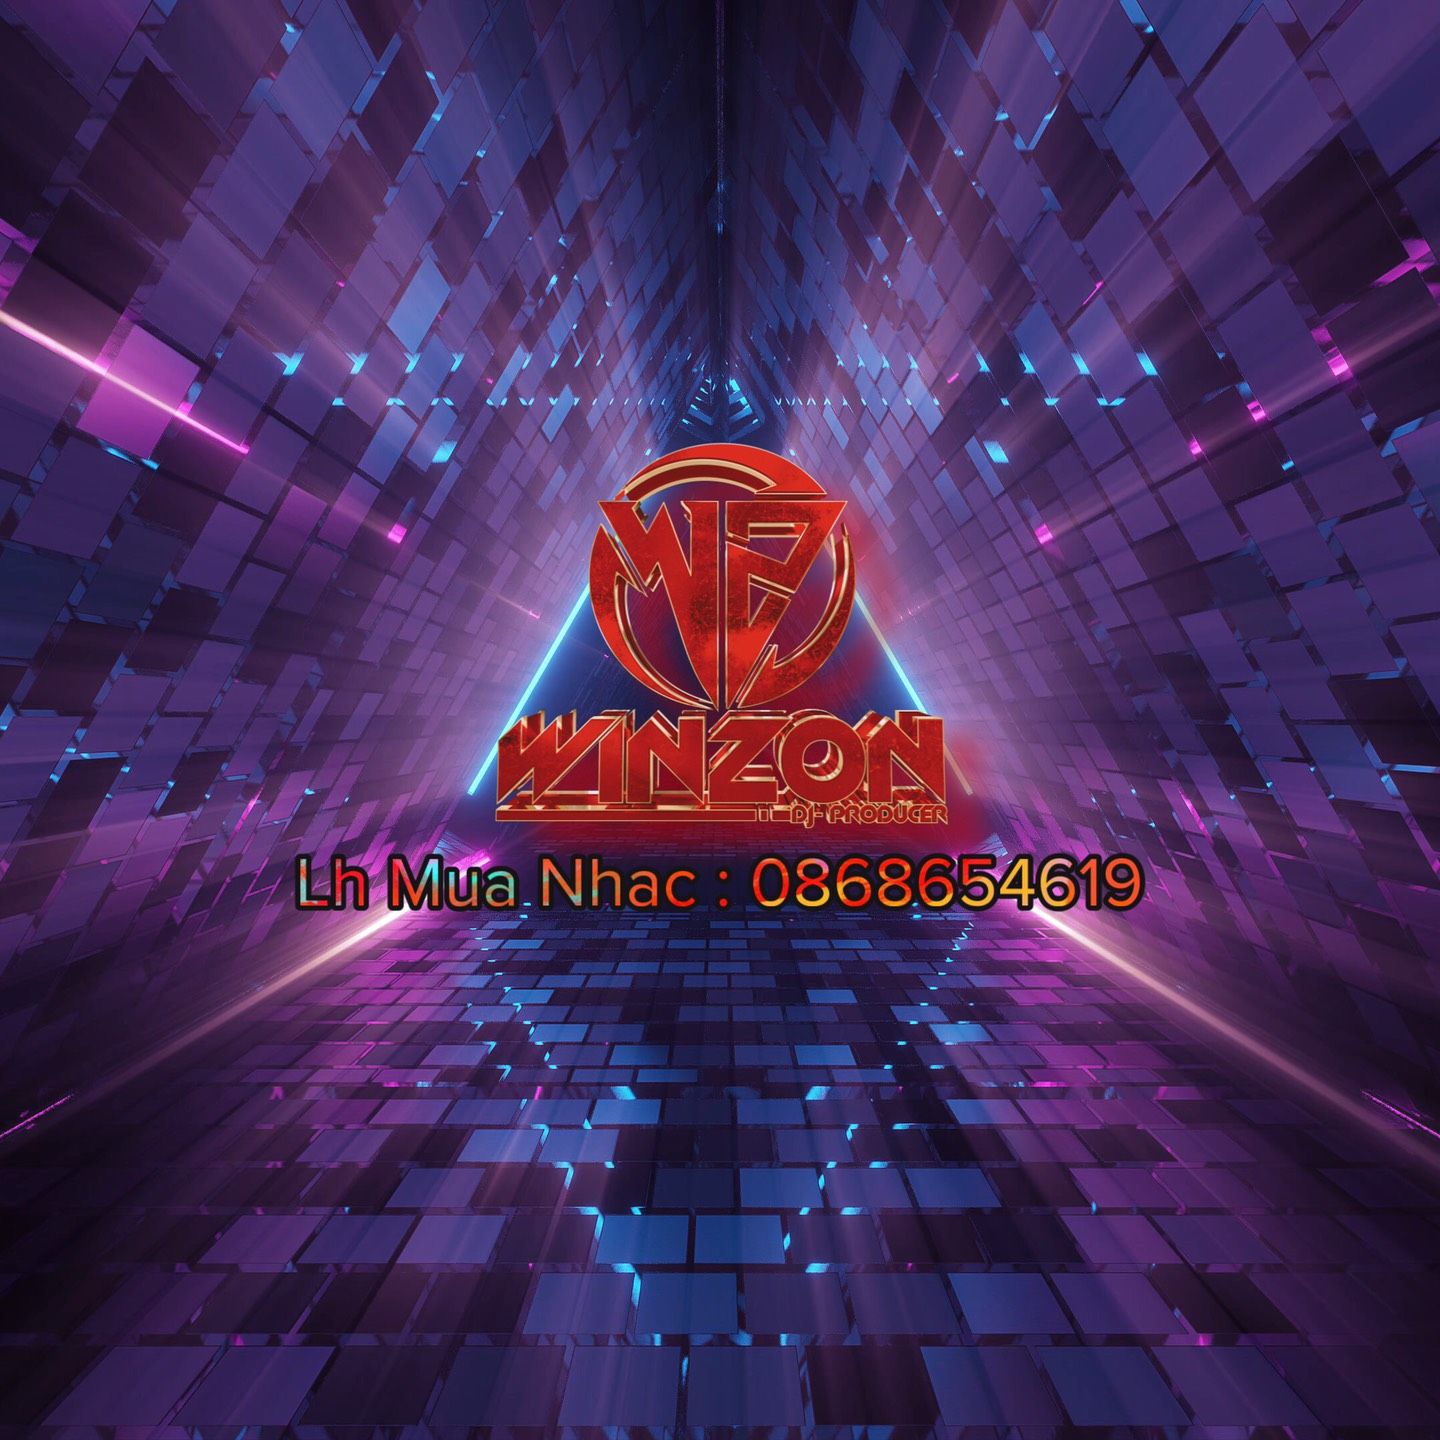 Elŝuti Anaconda 2021 - Winzon Remix